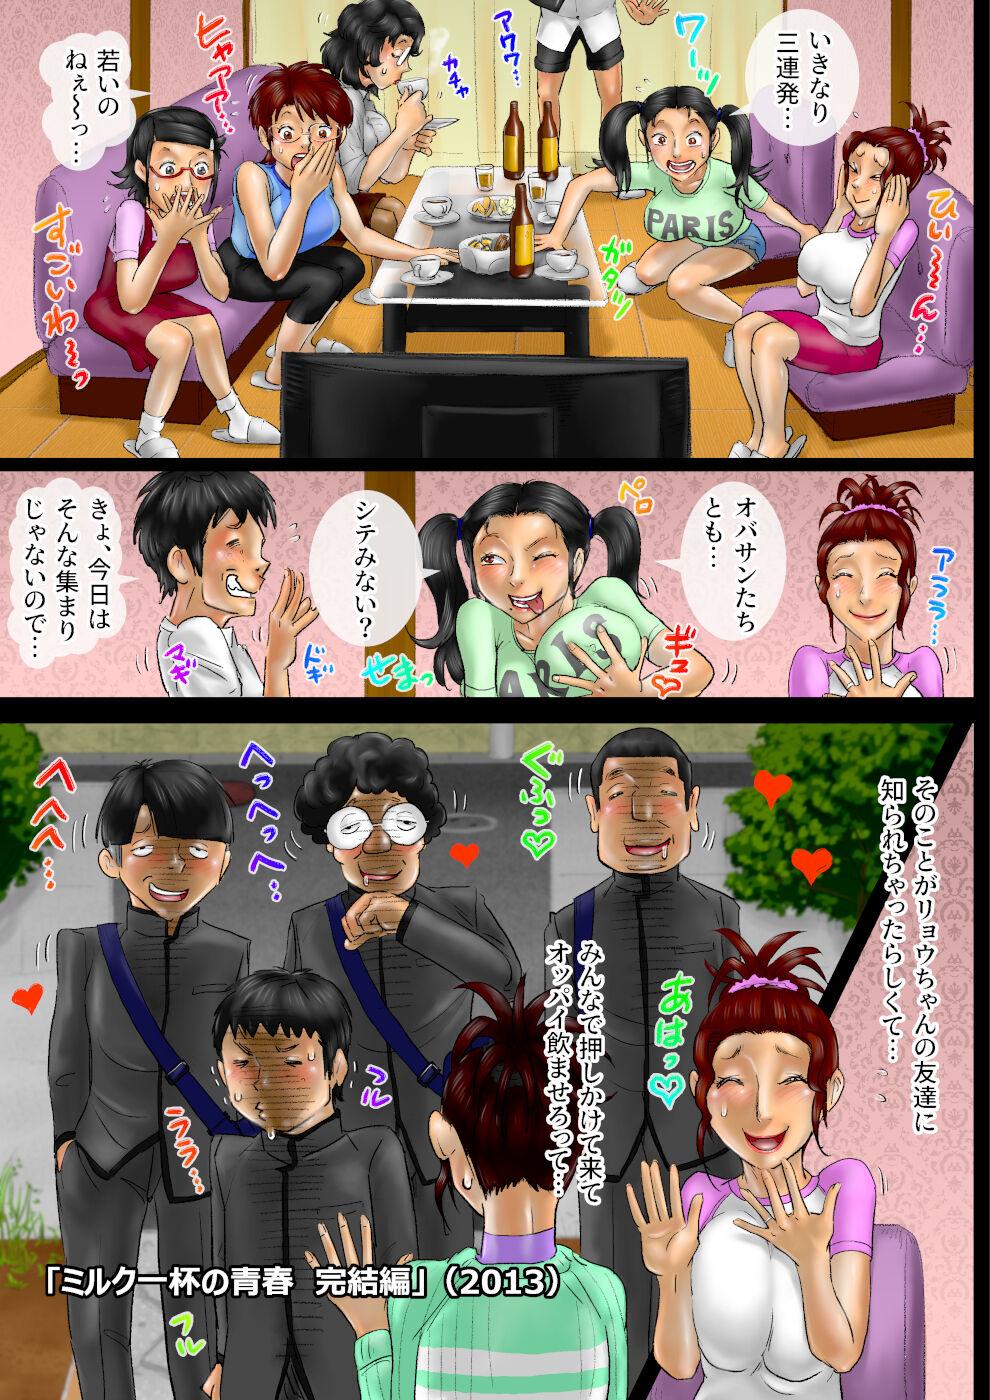 Amatuer Sākuru hossoku 10 shūnenkinen obasan kyara zadan-kai Costume - Page 8